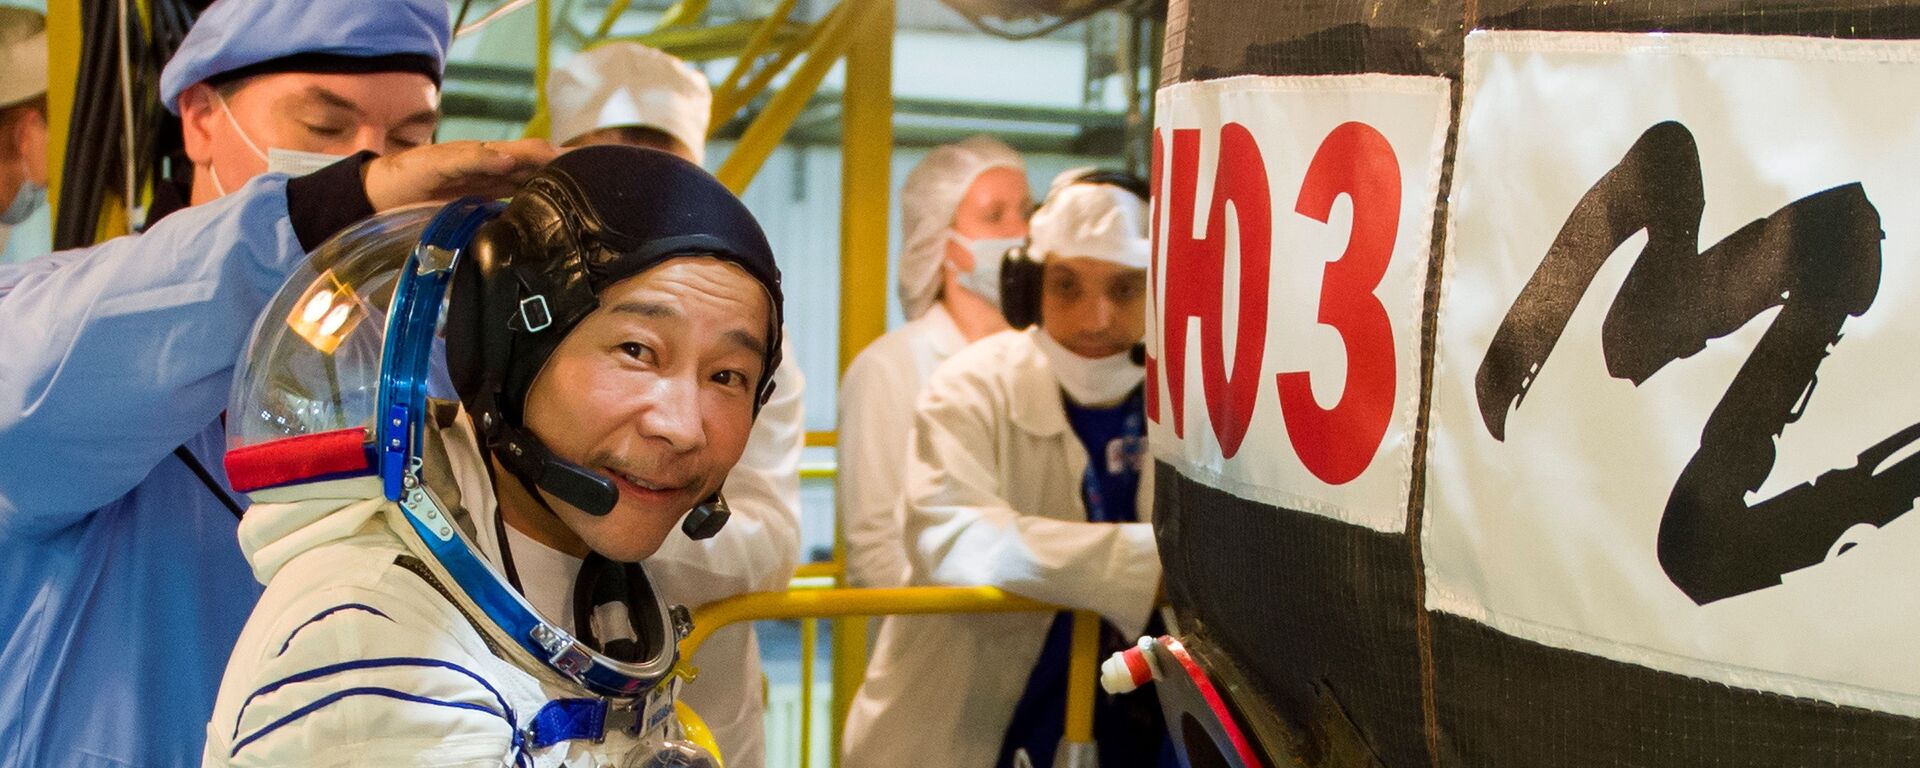 Японский предприниматель Юсаку Маесава у ракеты Союз во время подготовки к полету к МКС - Sputnik Mundo, 1920, 22.11.2021